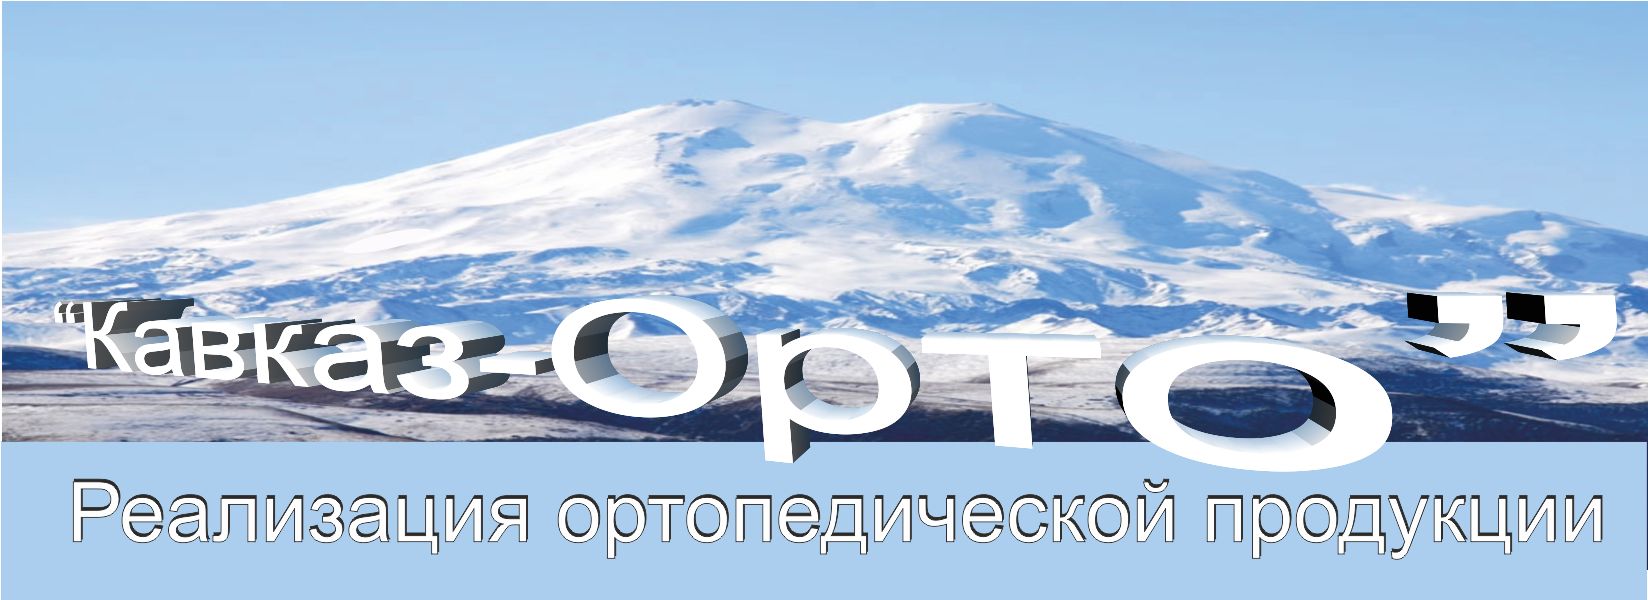 Логотип для ортопедического салона - дизайнер Cnjg-100P